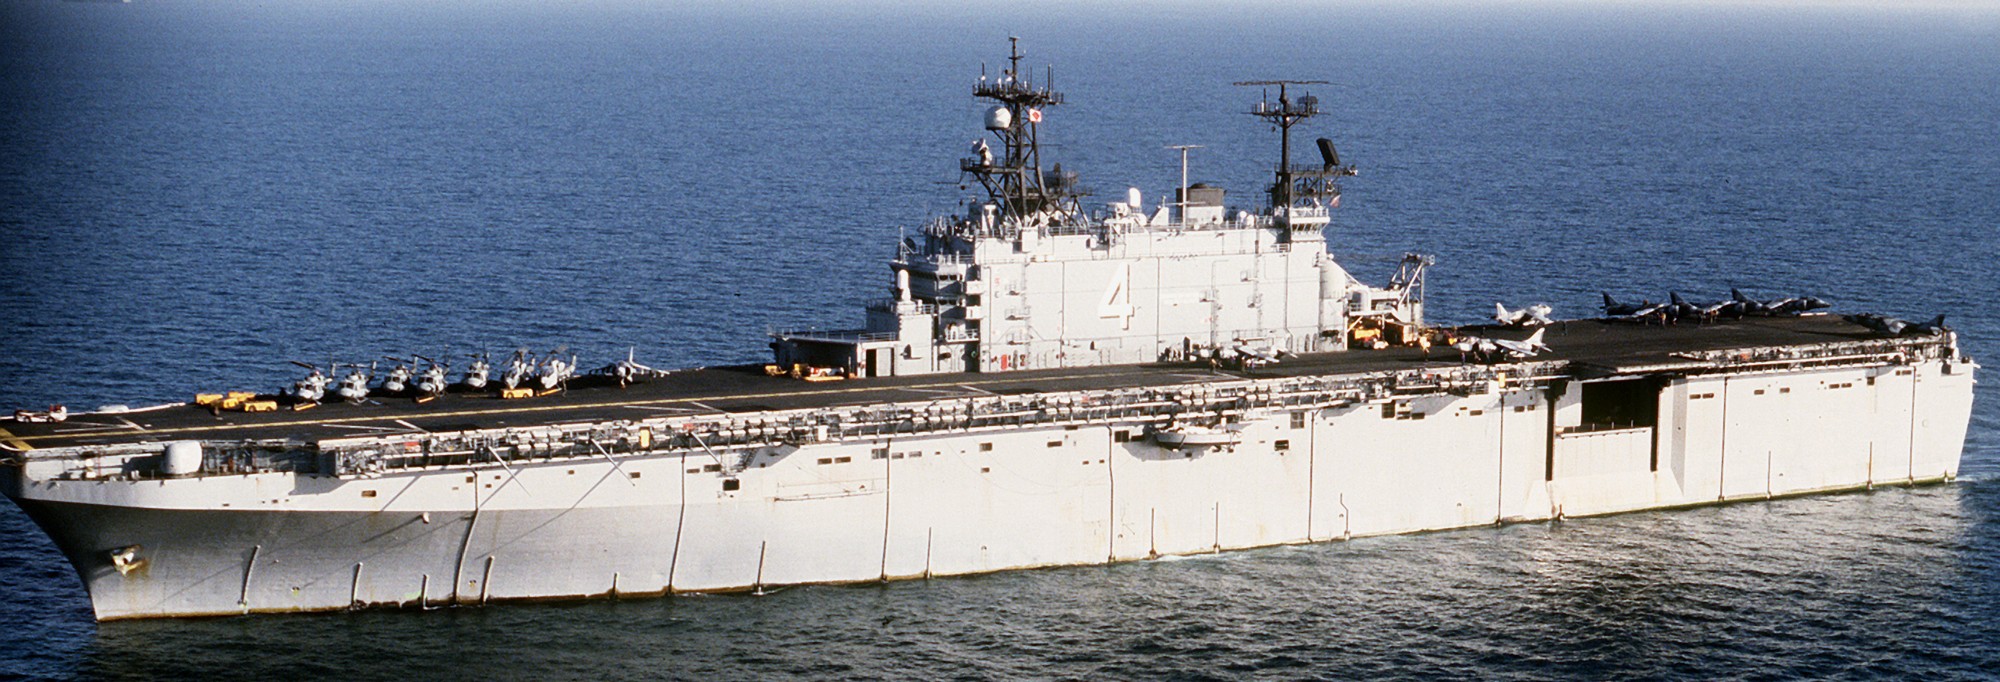 lha-4 uss nassau tarawa class amphibious assault ship us navy 134 desert storm 1991